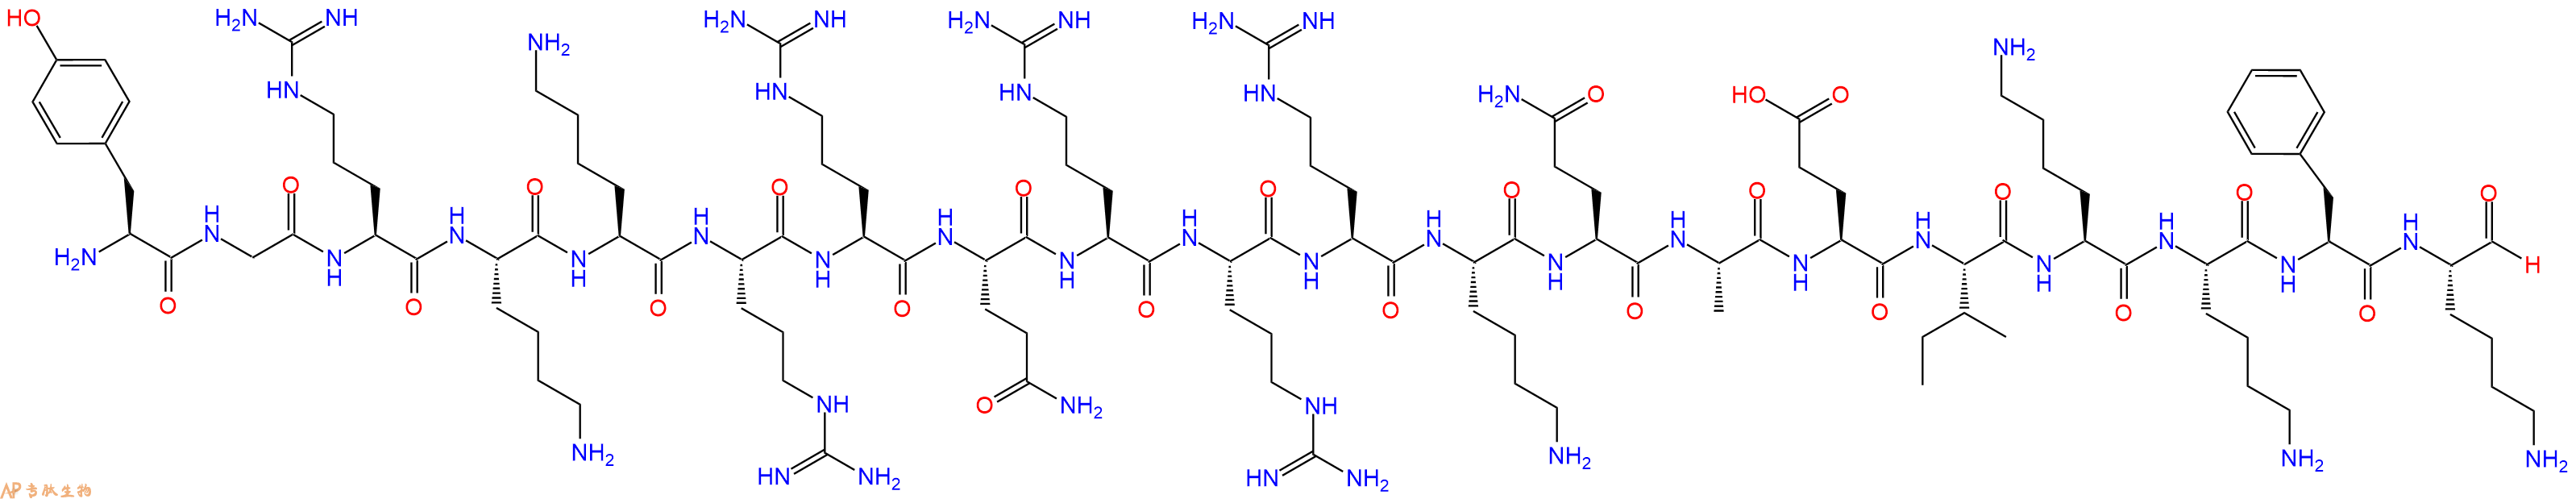 专肽生物产品H2N-Tyr-Gly-Arg-Lys-Lys-Arg-Arg-Gln-Arg-Arg-Arg-Ly